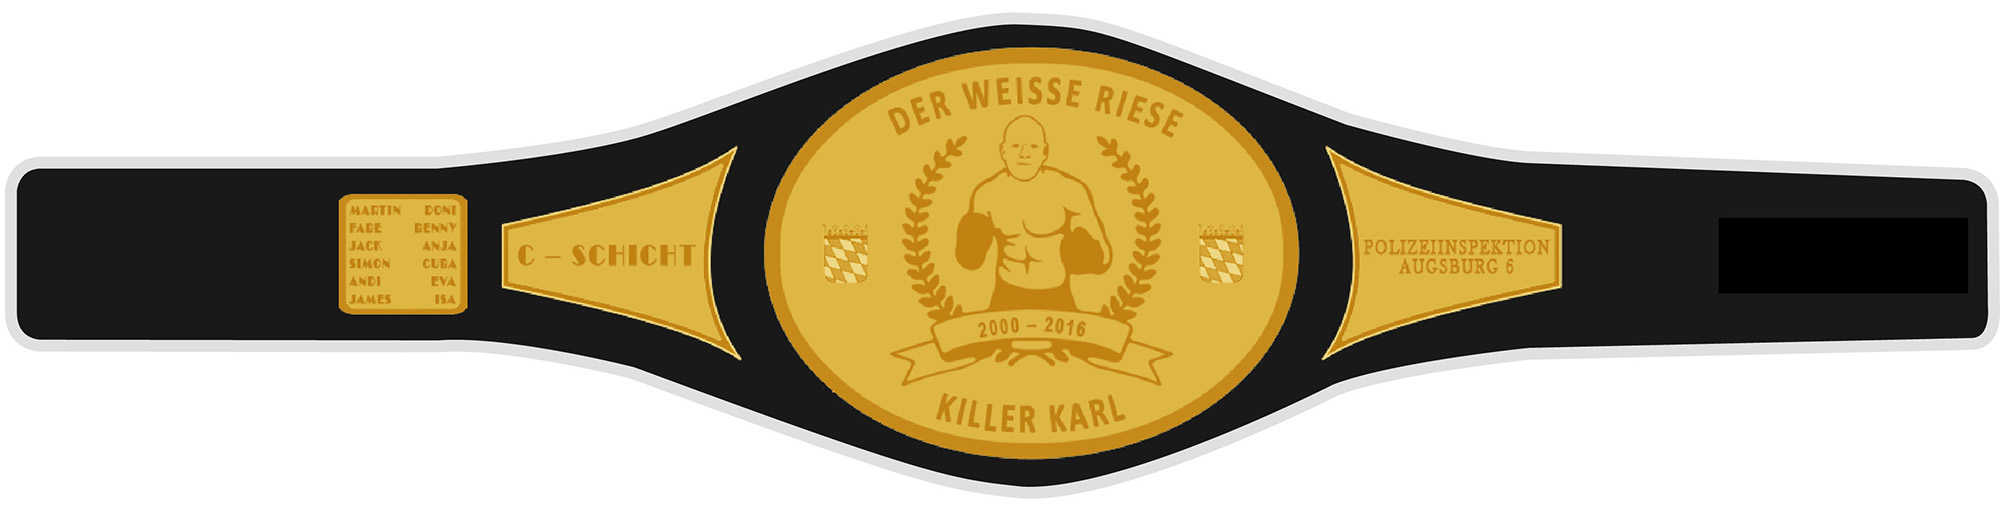 Killer Karl Champion Gürtel - Polizei Augsburg Abschiedsgeschenk